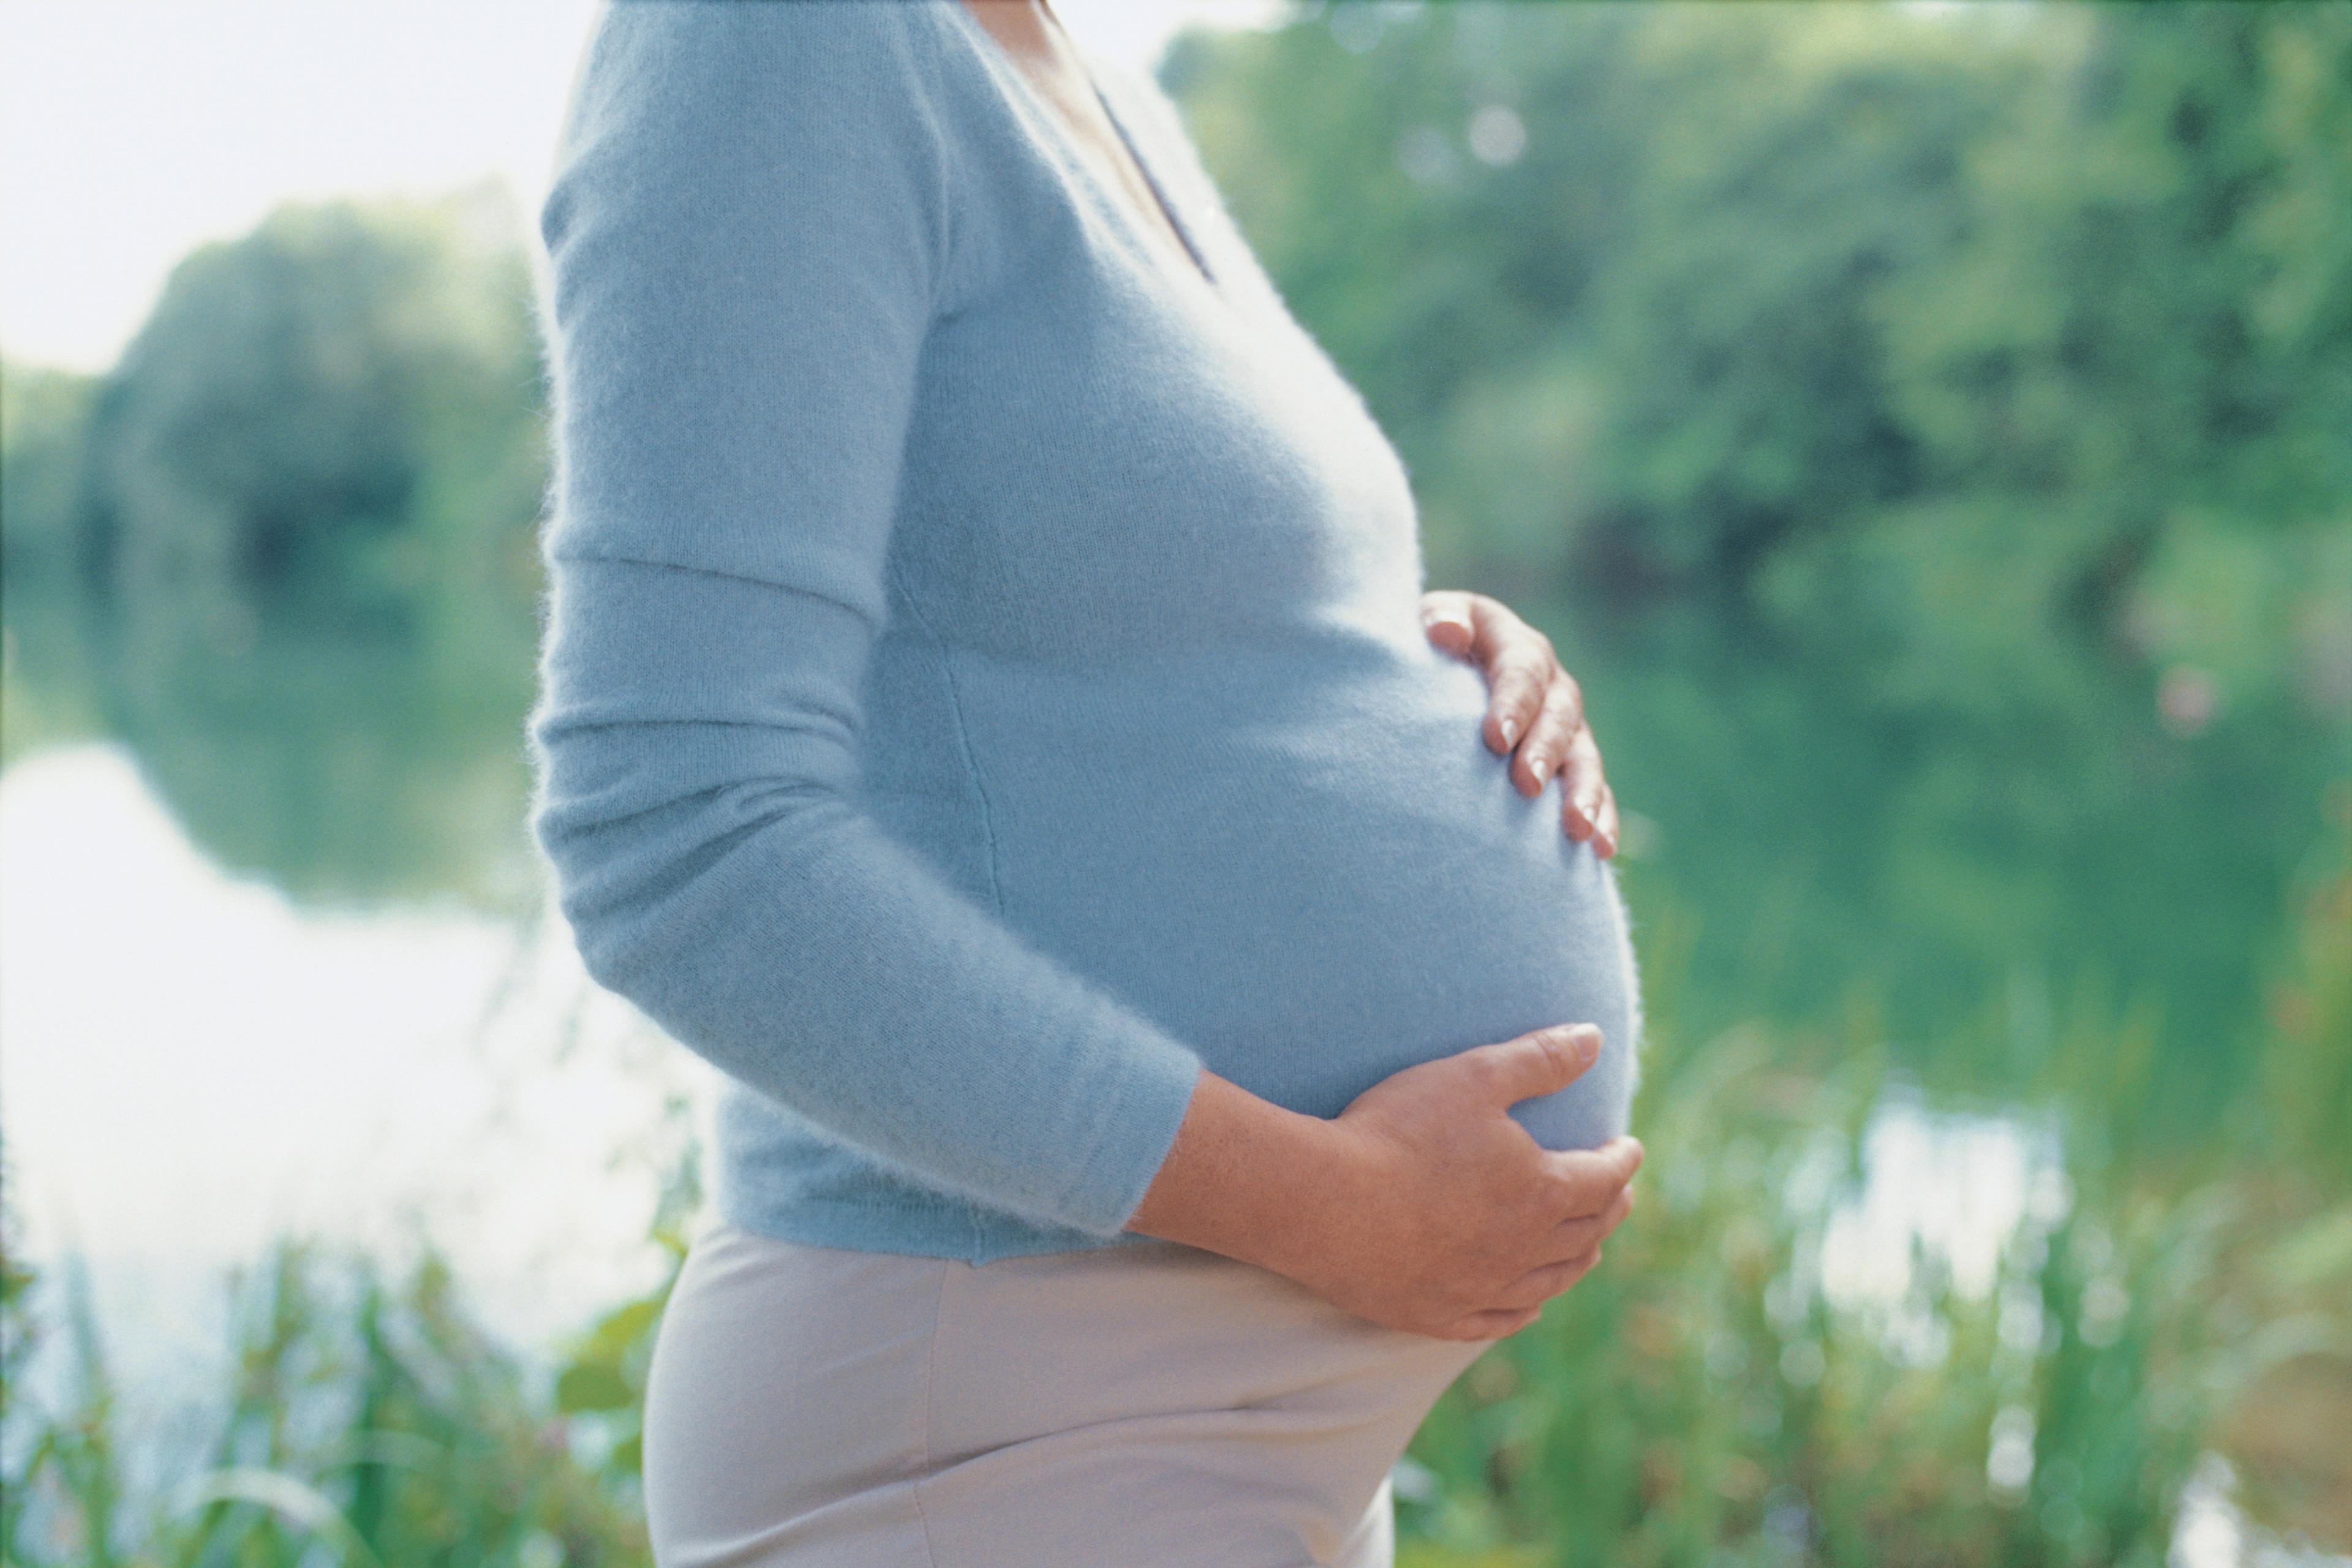   Phụ nữ mang thai uống nước ngọt có ga sẽ làm tăng nguy cơ sinh non  